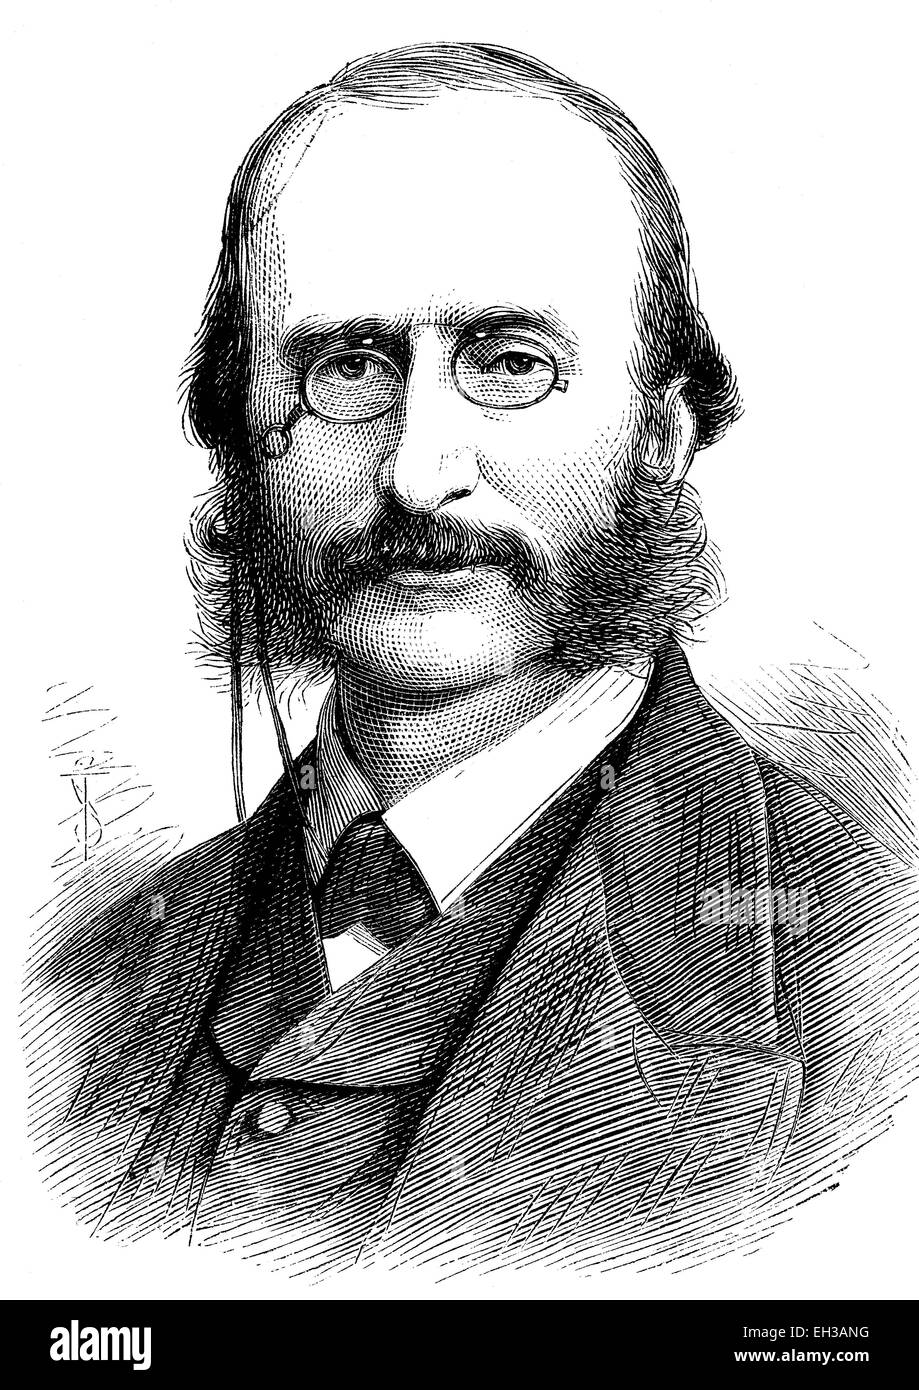 Jacques Offenbach, 1819 - 1880, né comme Jakob Eberst, un compositeur et violoncelliste français d'origine juive et allemande, considéré comme le fondateur de l'opérette moderne, gravure sur bois, 1880 Banque D'Images